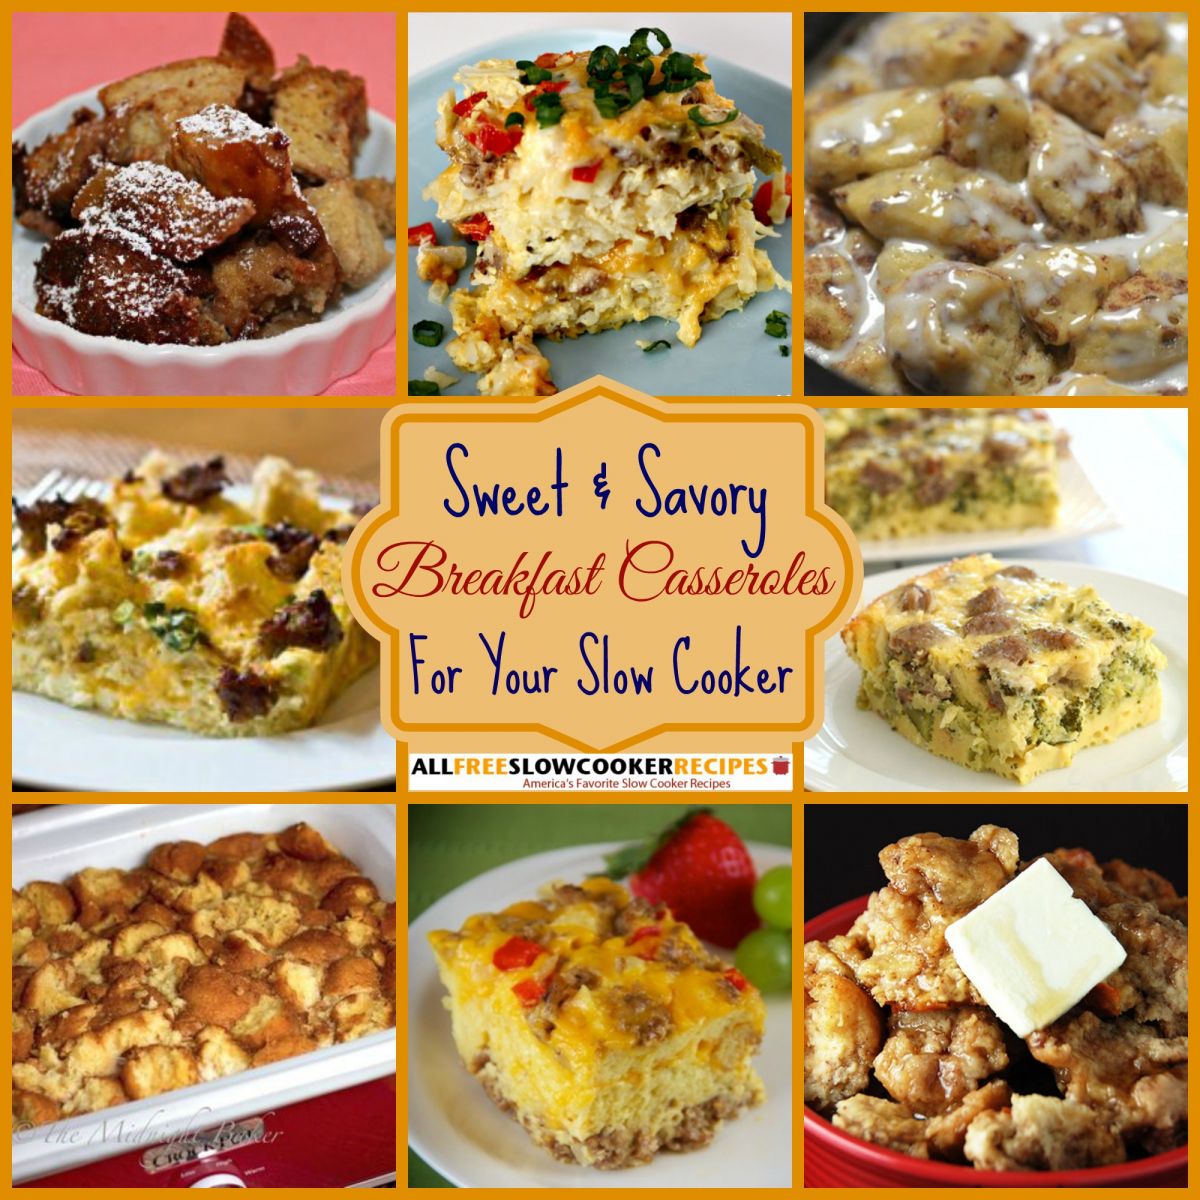 Sweet & Savory Slow Cooker Breakfast Casseroles